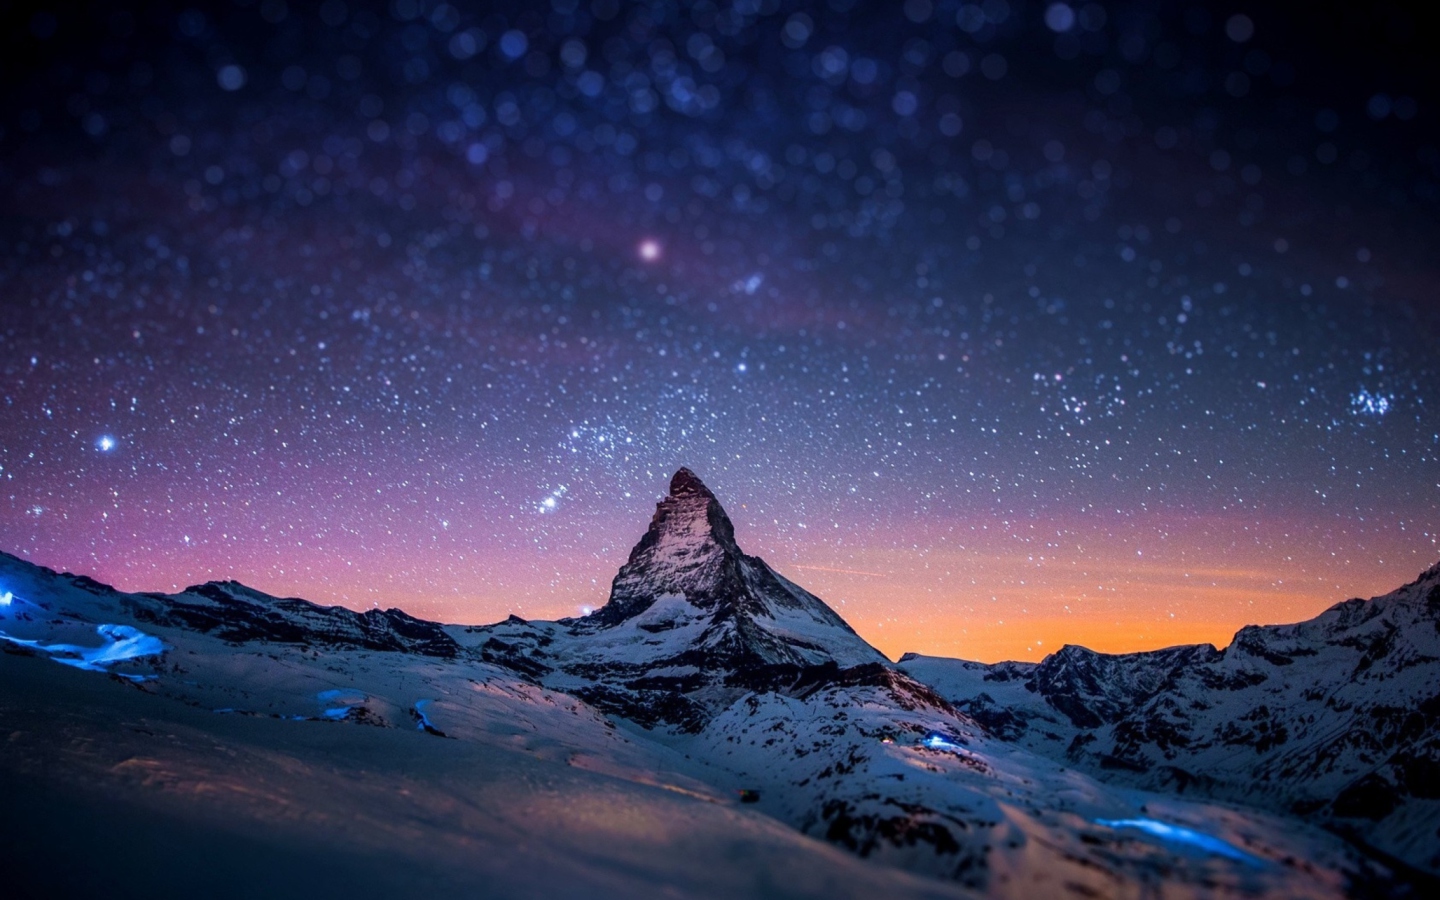 Обои Mountain At Night 1440x900